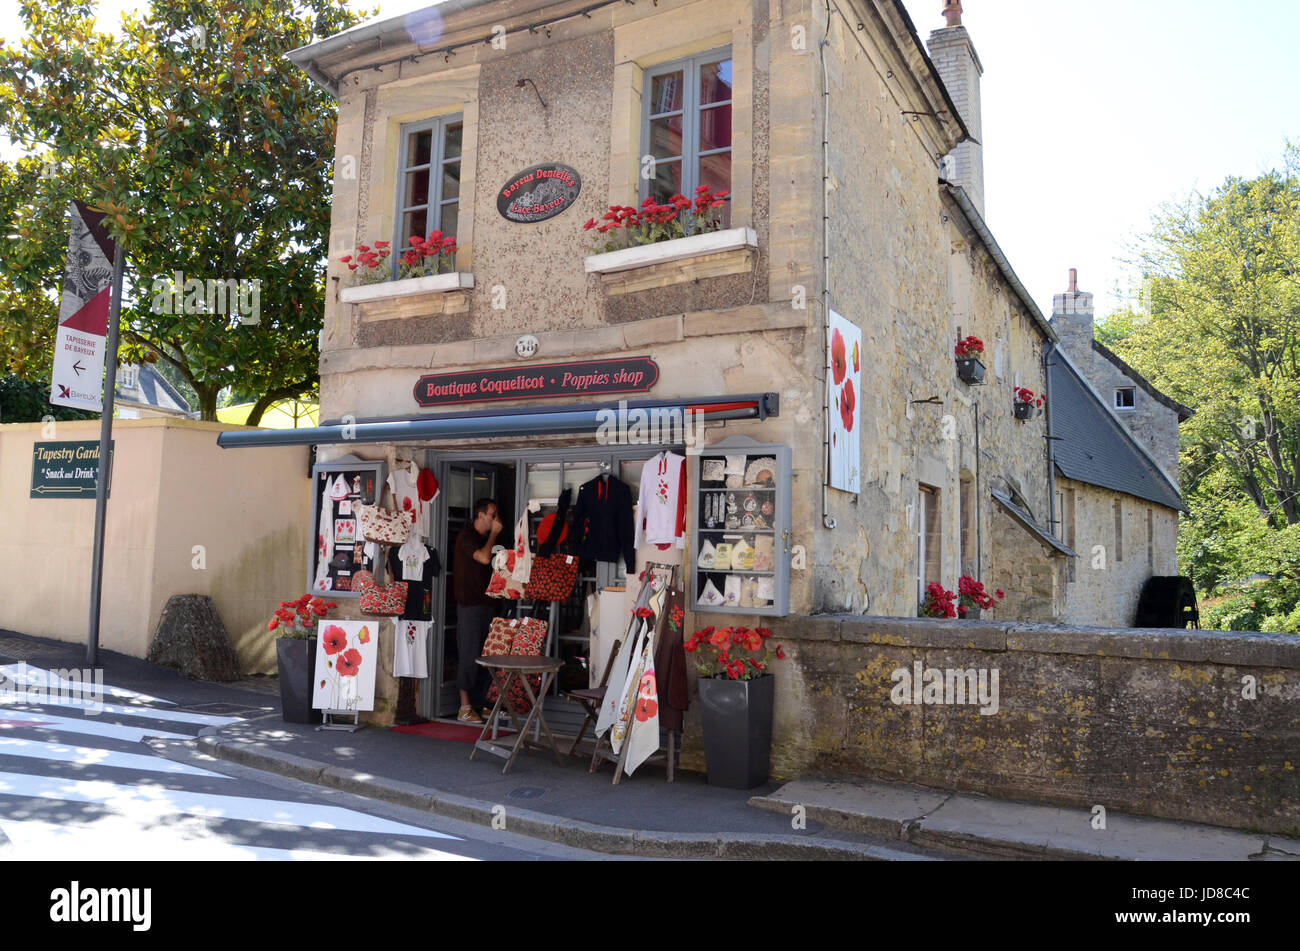 BAYEUX, FRANCE - AUG 12 : Le Coquelicot boutique vend divers articles sur le thème du coquelicot à Bayeux, France le 12 août 2016. Banque D'Images